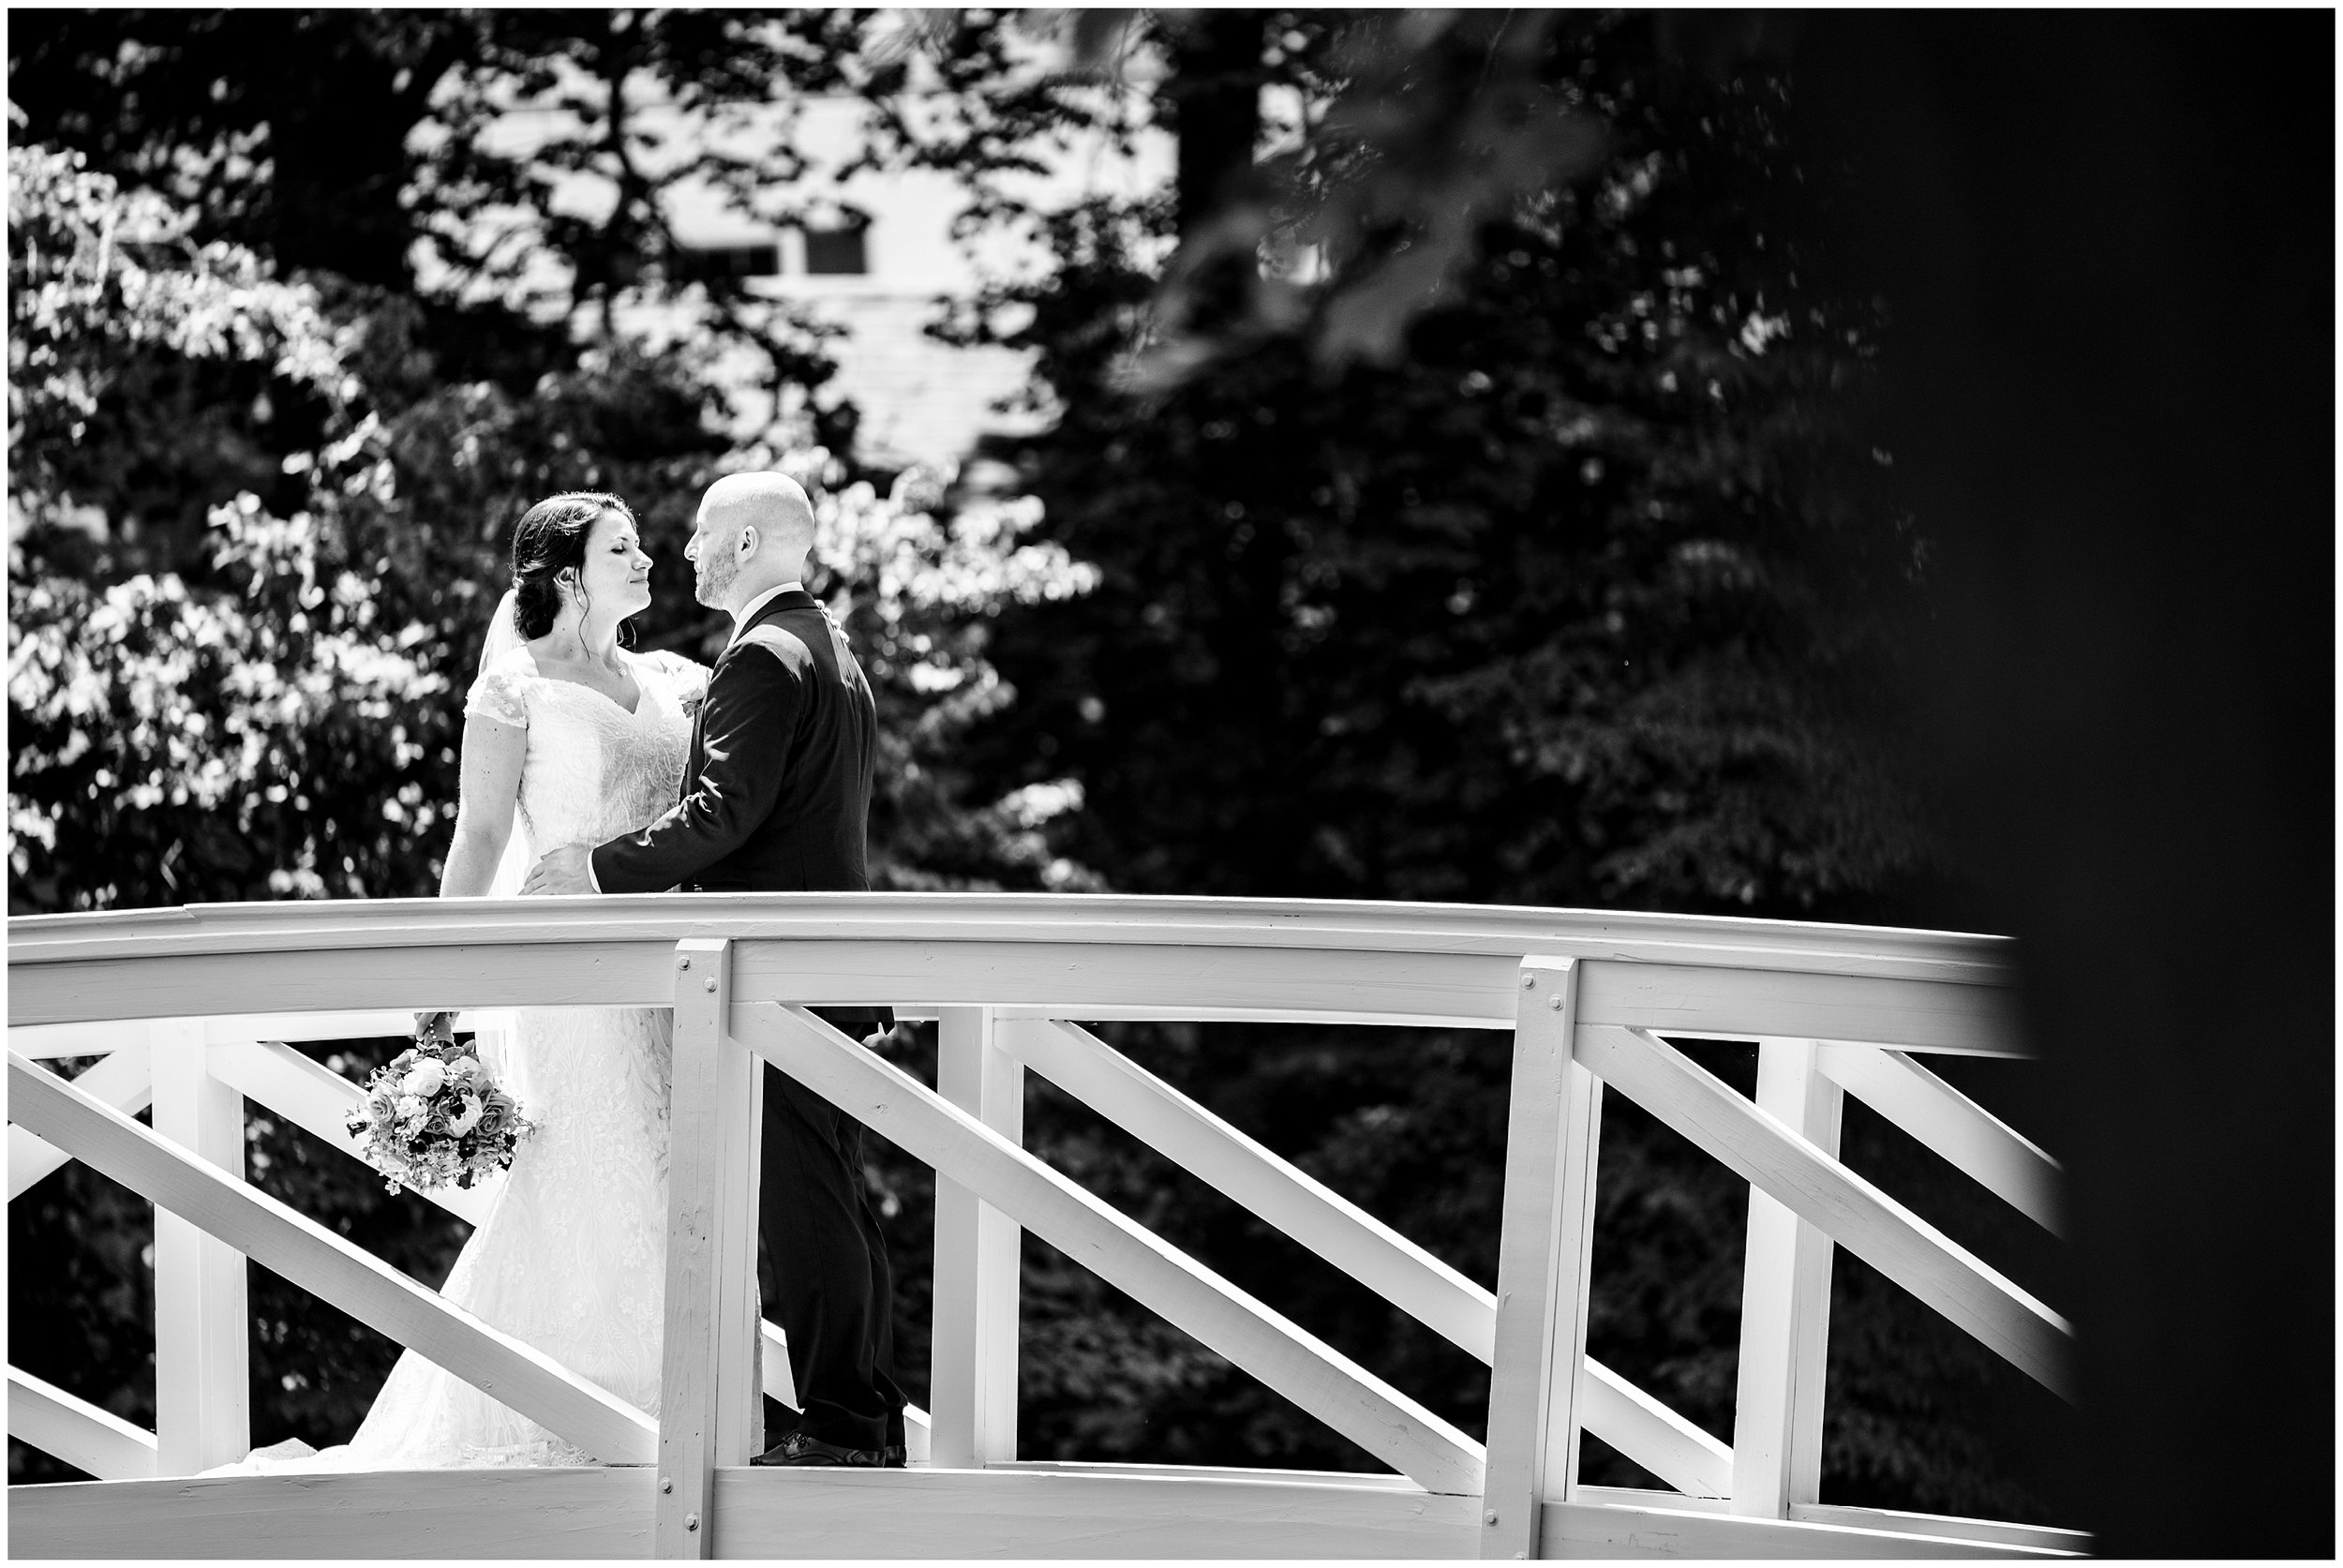 Bar Harbor Inn Maine Wedding Photographers, Acadia National Park Maine Photographer, Two Adventurous Souls- 070623_0020.jpg